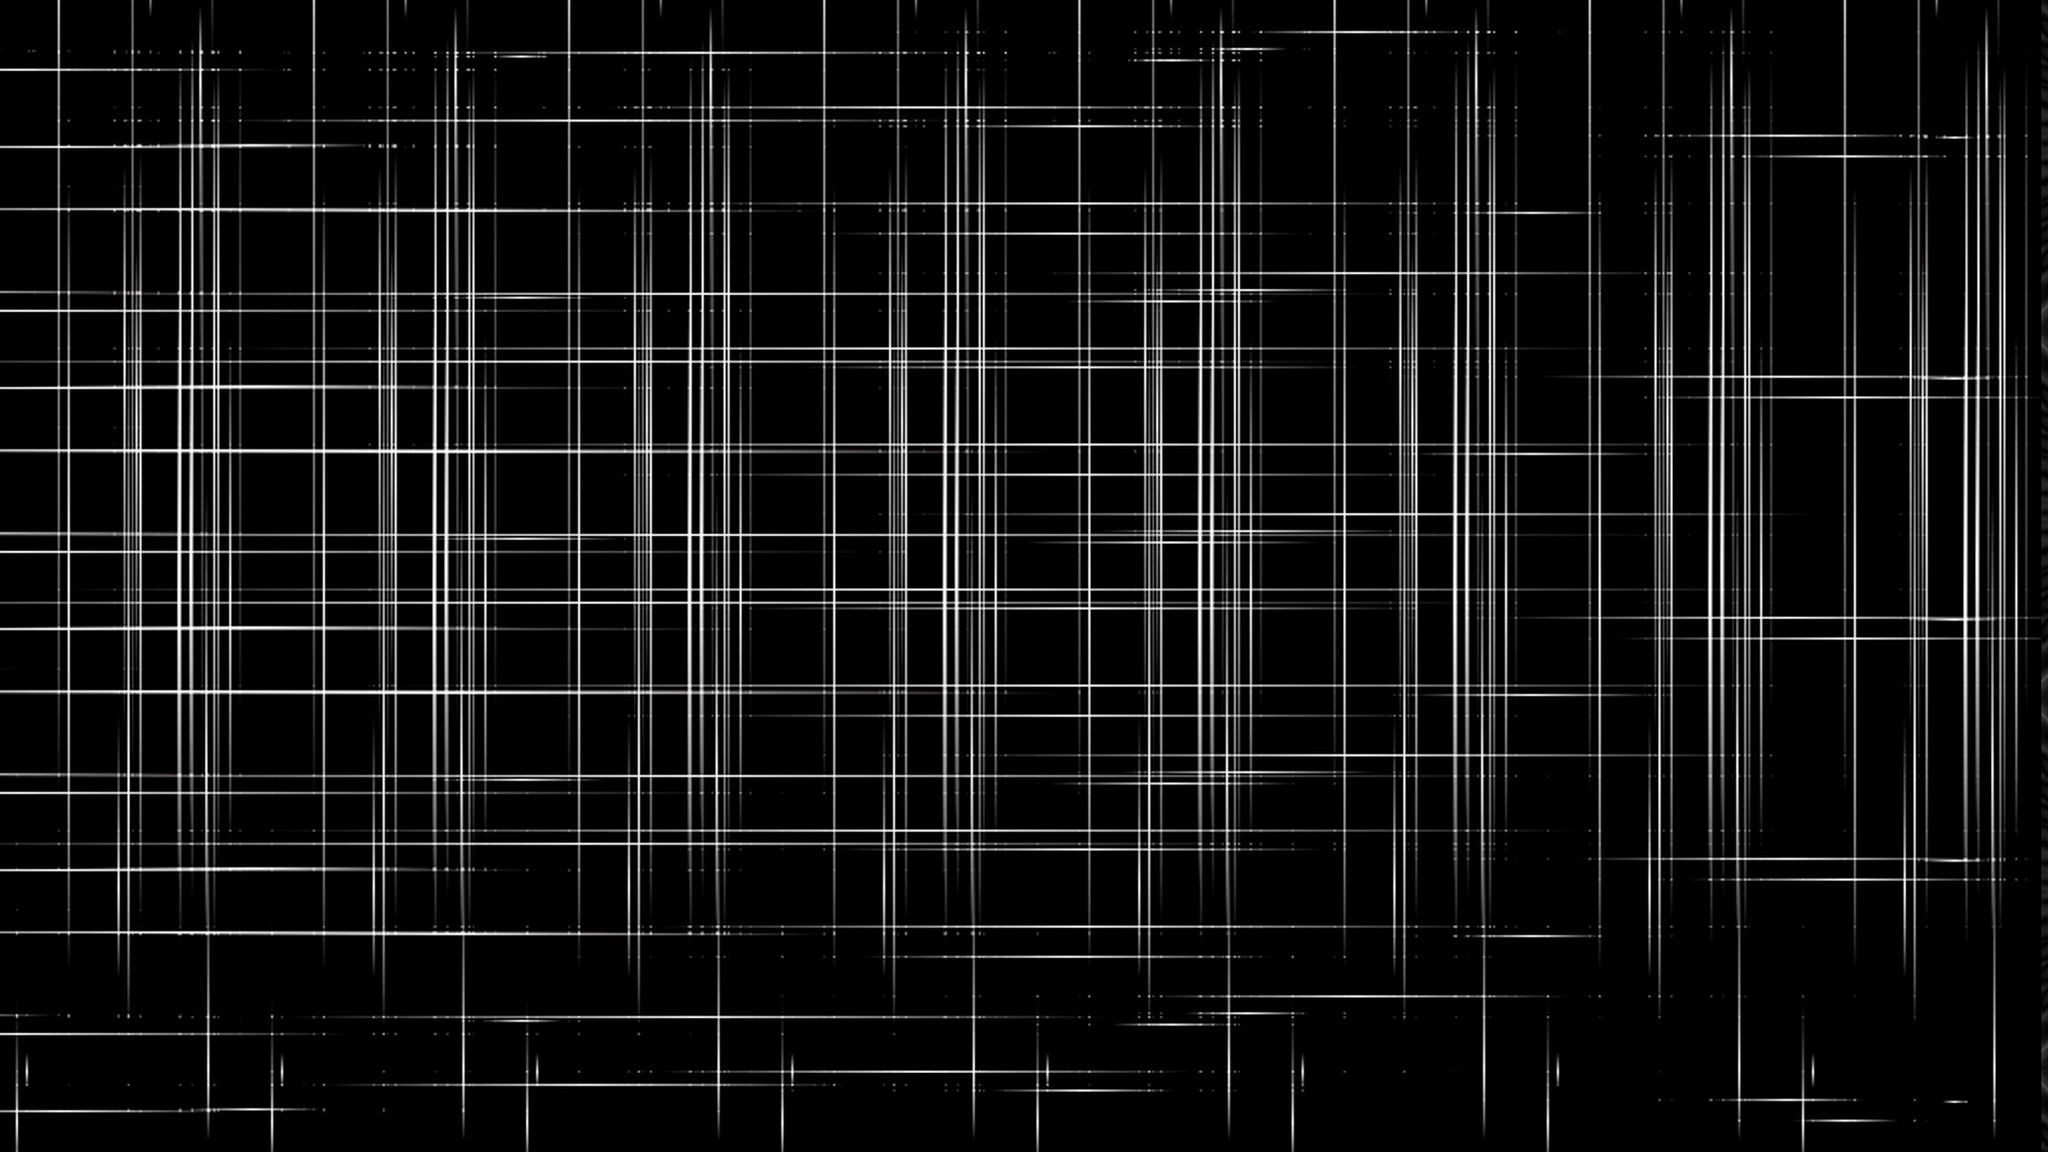 Hình nền trừu tượng kích thước 2048x1152 với một họa tiết lưới đen sẽ mang lại cảm giác tăng tính đồng nhất và hiện đại cho màn hình của bạn. Khám phá hình ảnh liên quan để trải nghiệm một vẻ đẹp đầy tinh tế.